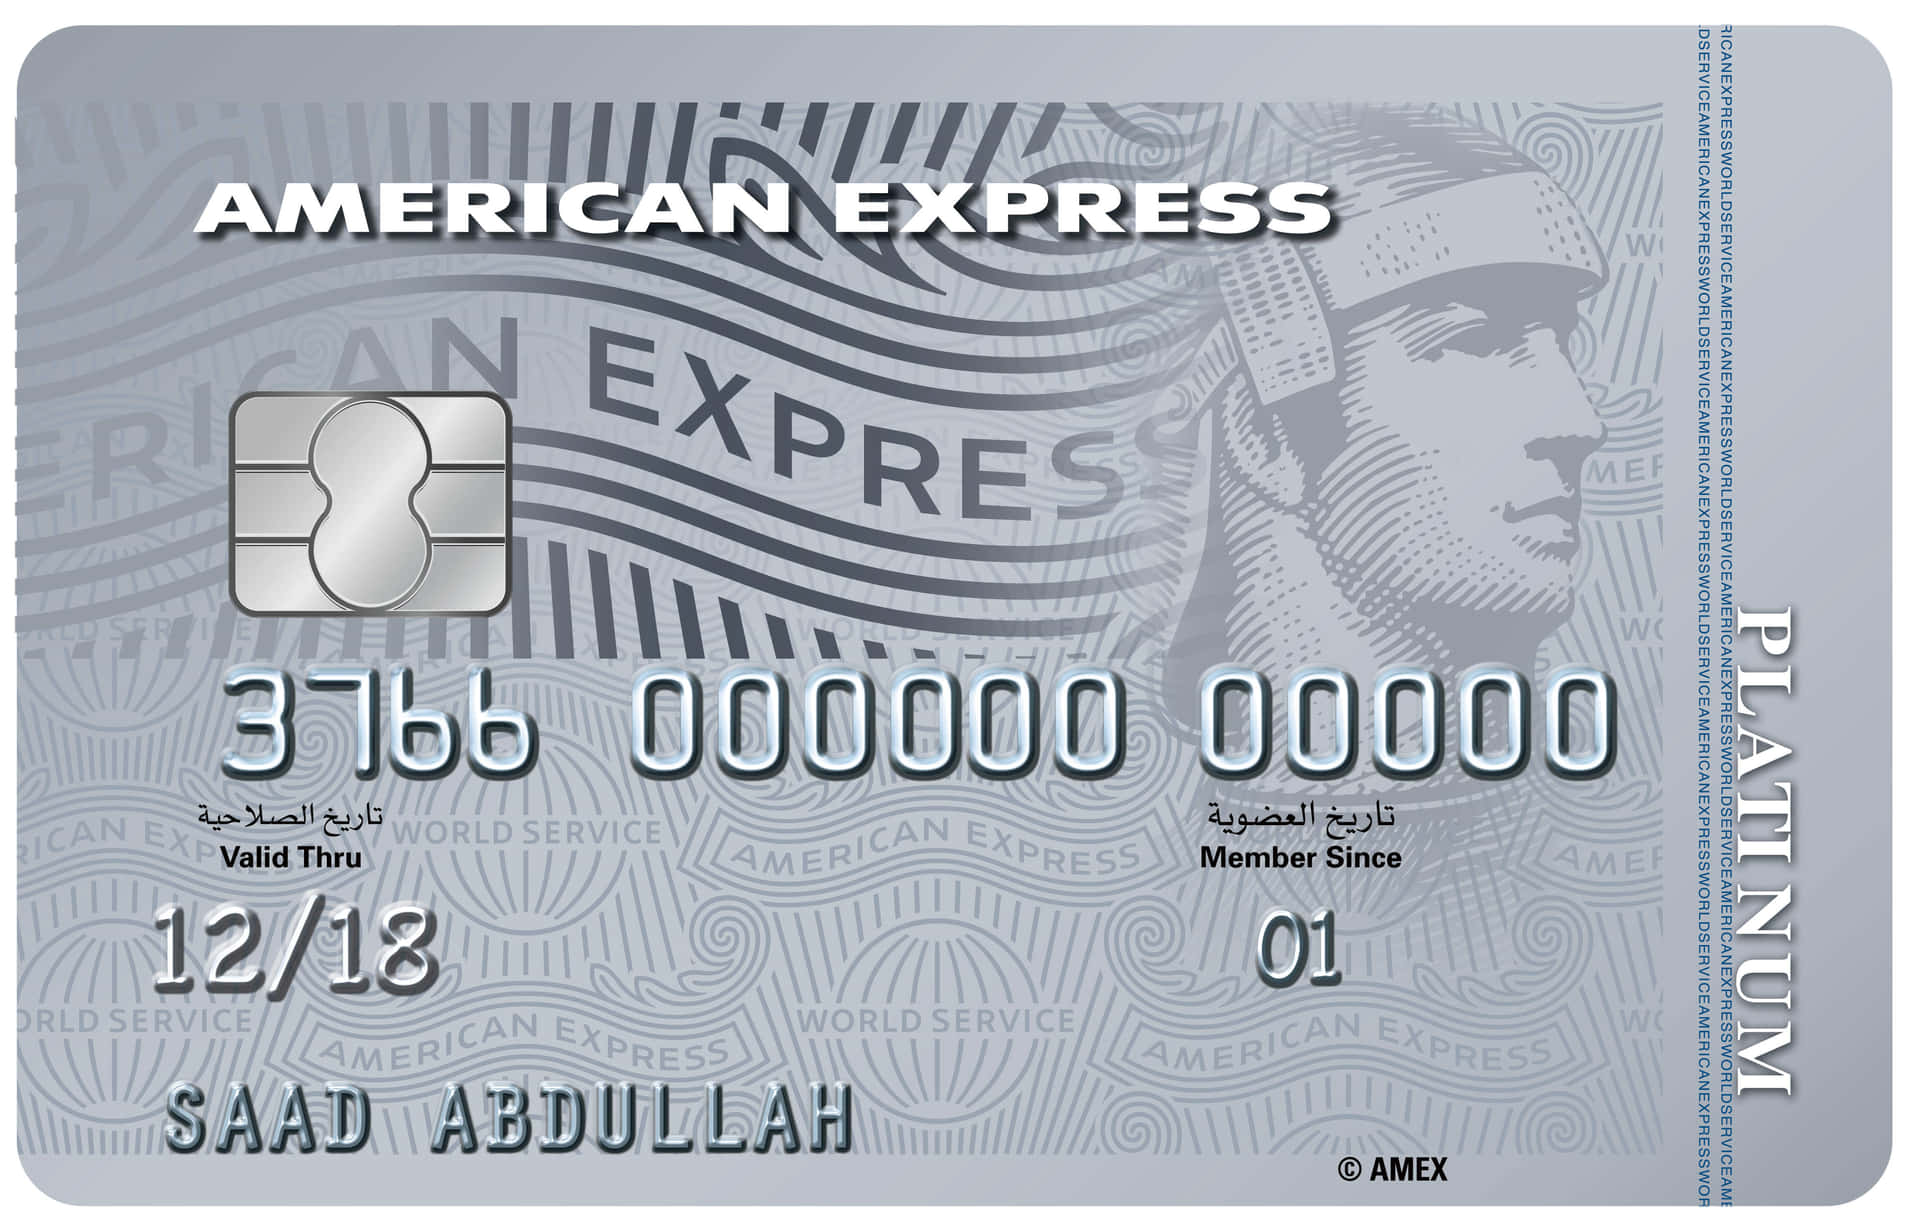 Erreichensie Ihre Finanziellen Ziele Mit American Express.